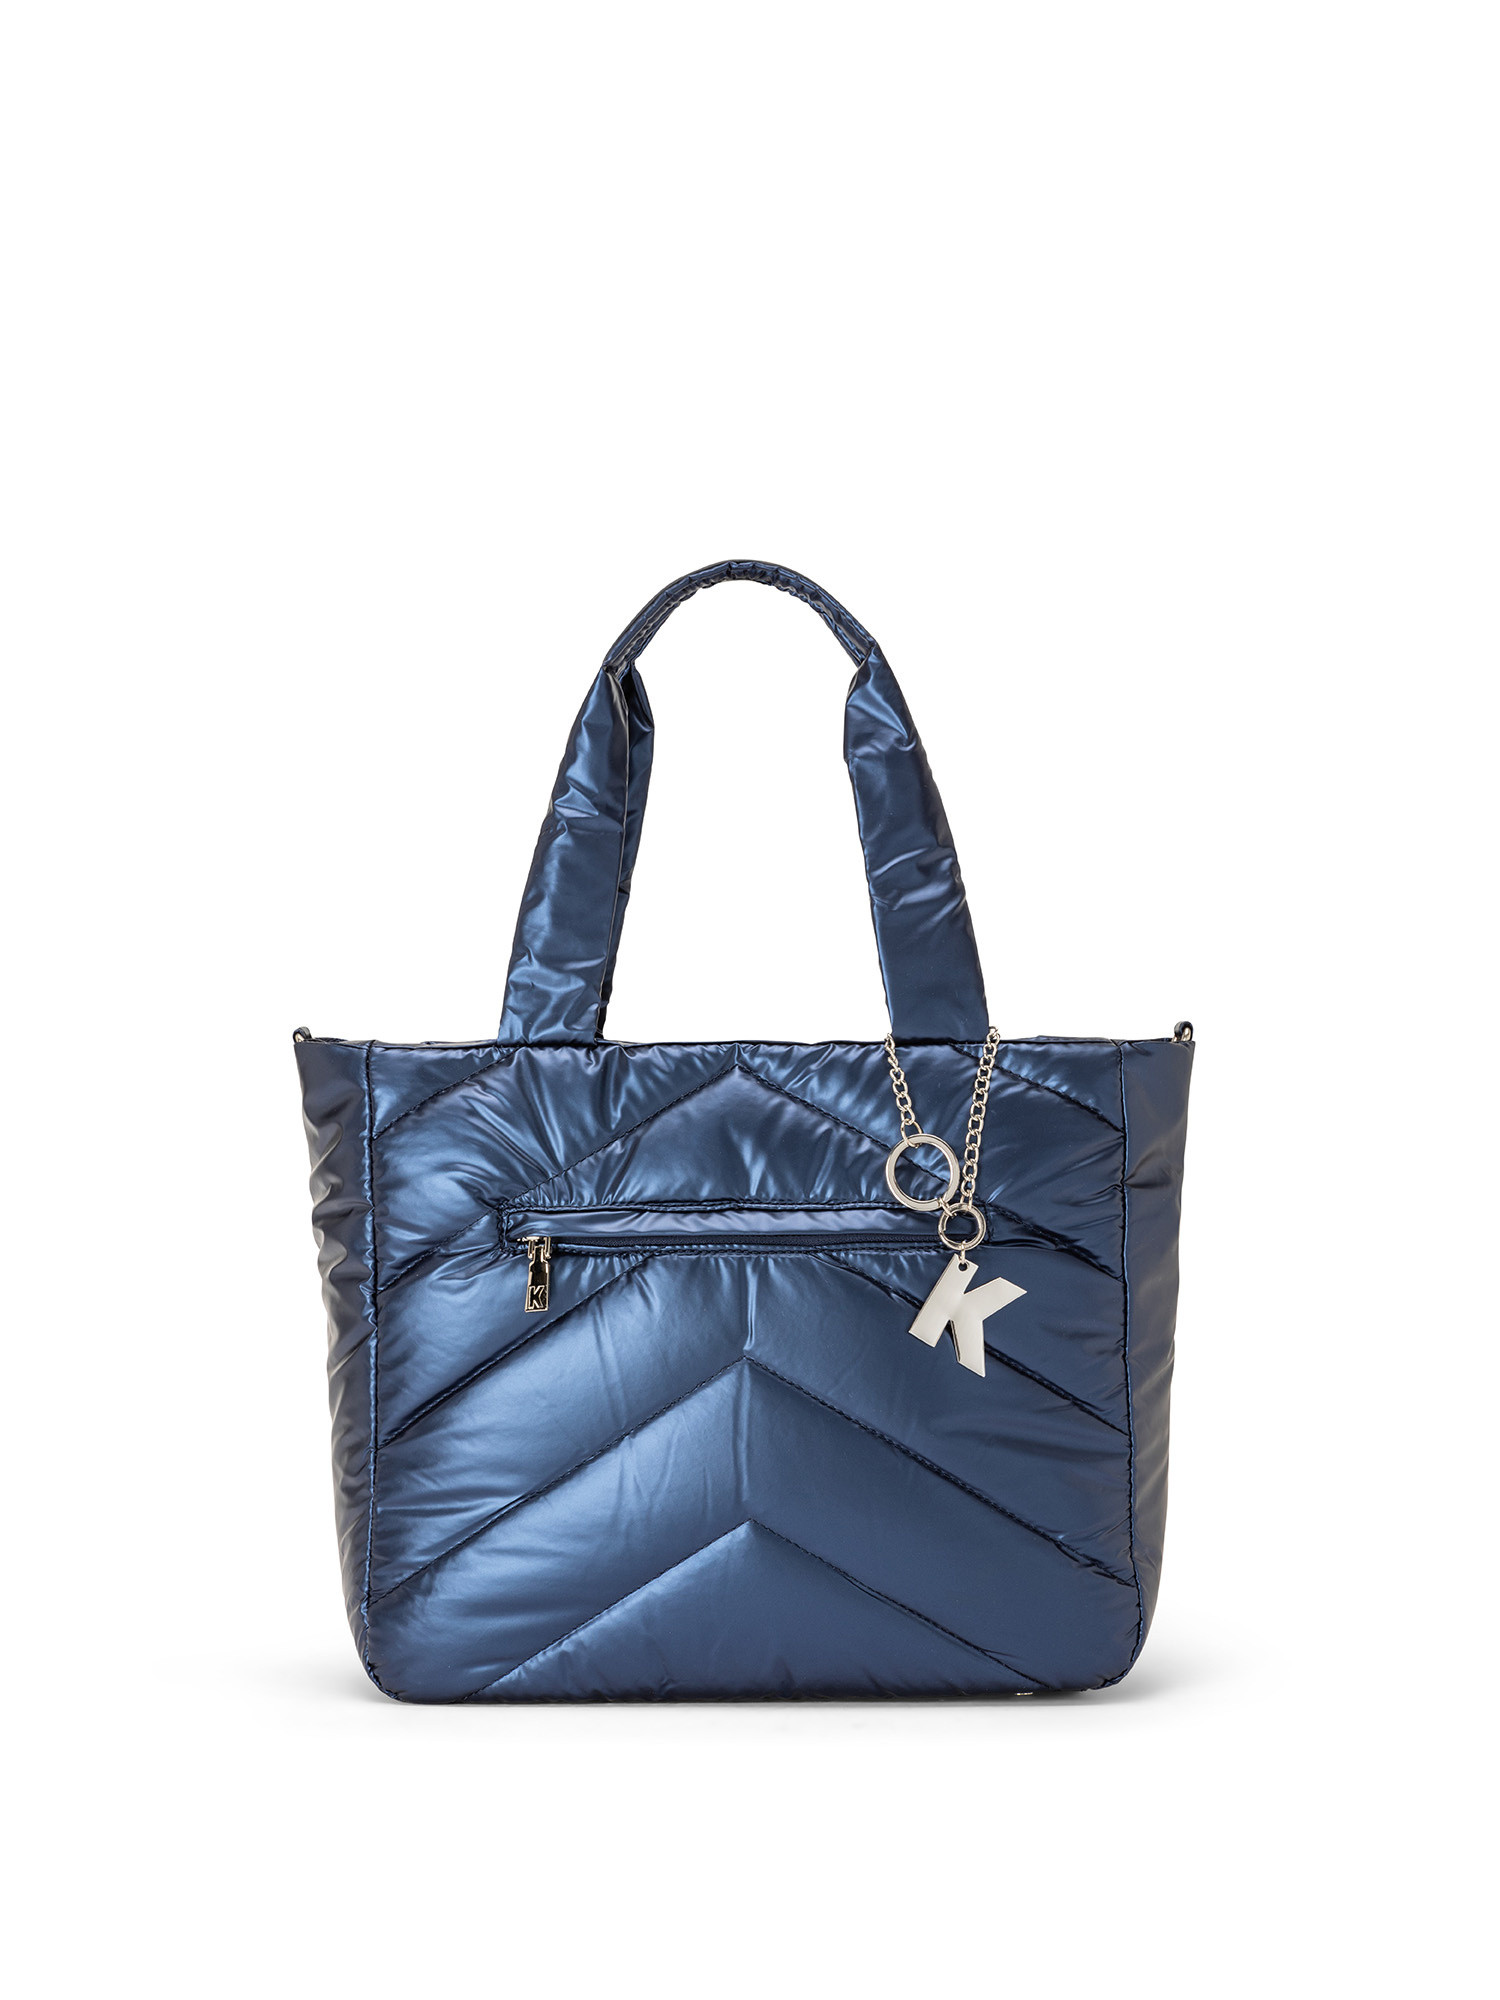 Koan - Shopping bag in nylon, Blu, large image number 0